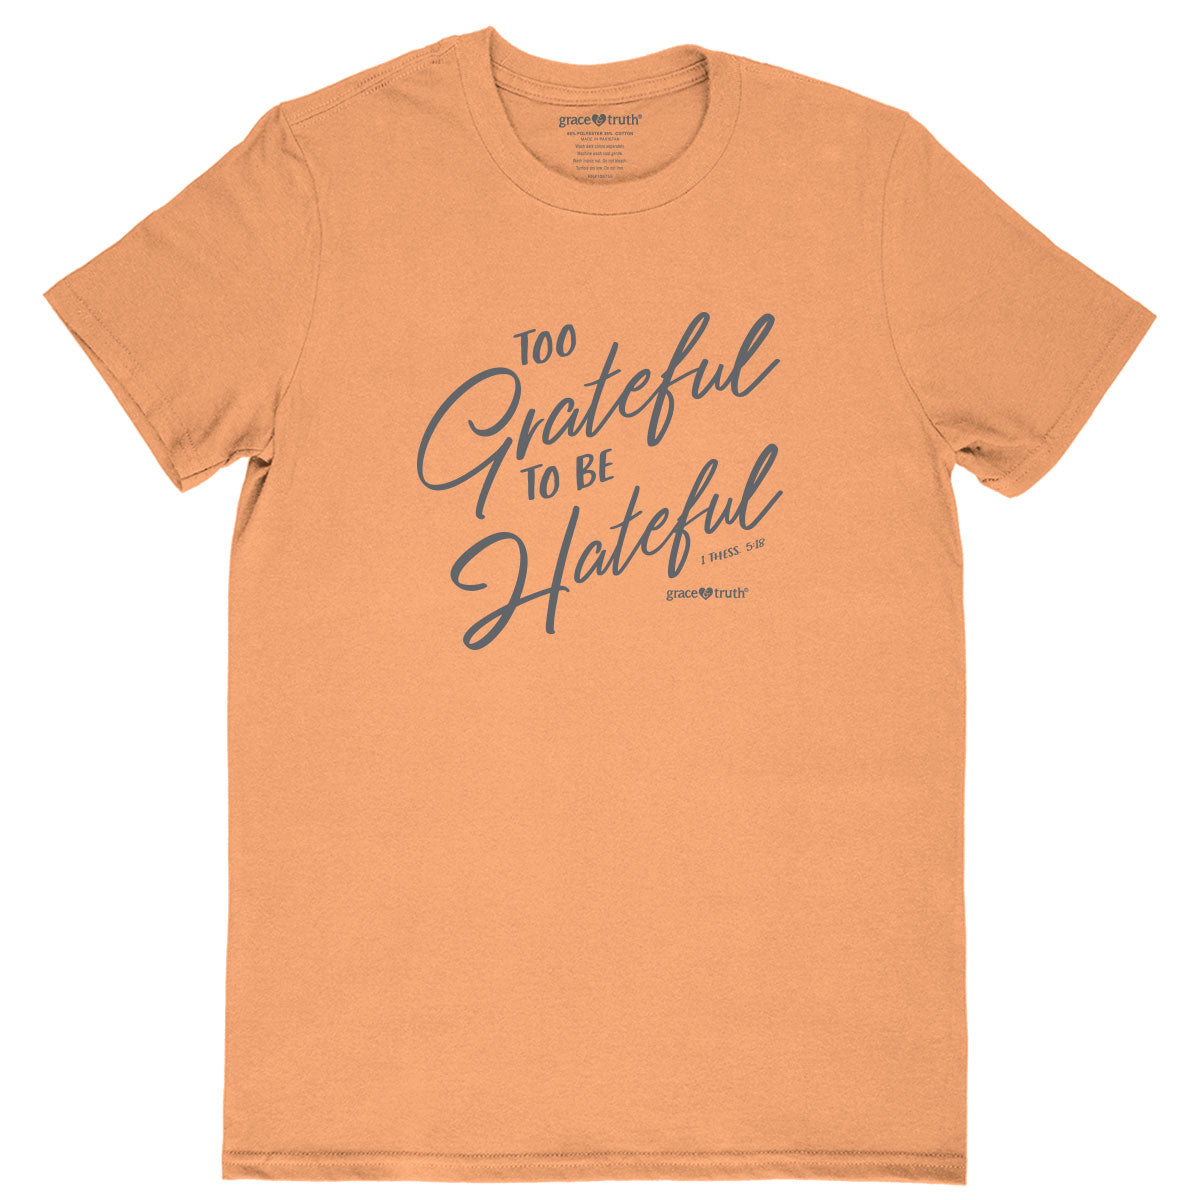 grace & truth Womens T-Shirt Grateful